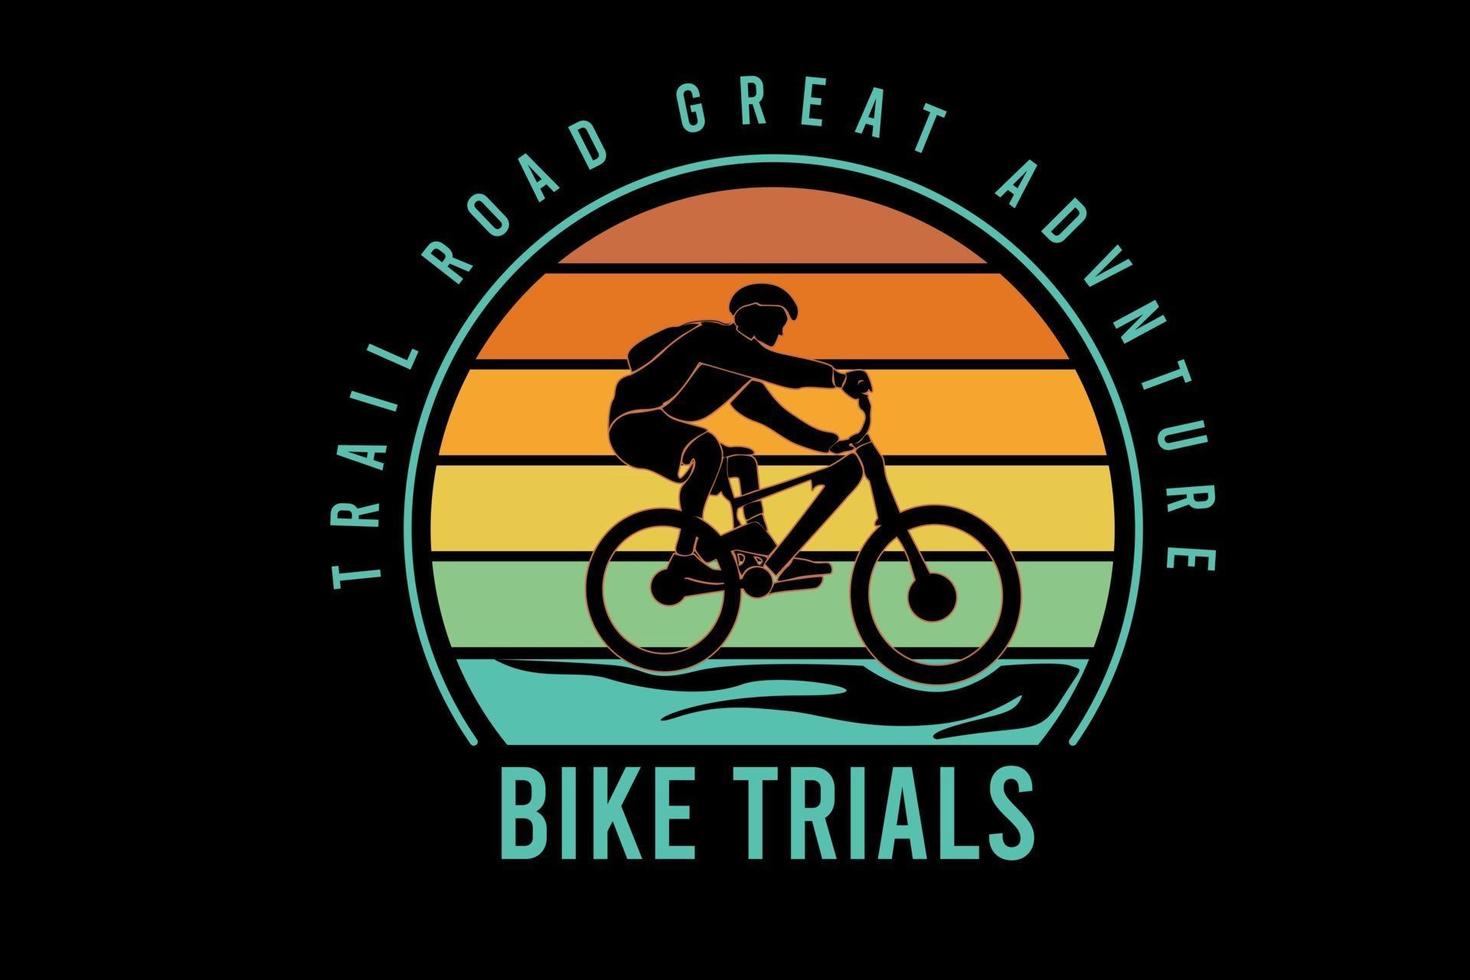 Trail Road tolle Adventure Bike Trails Farbe Orange Gelb und Grün vektor